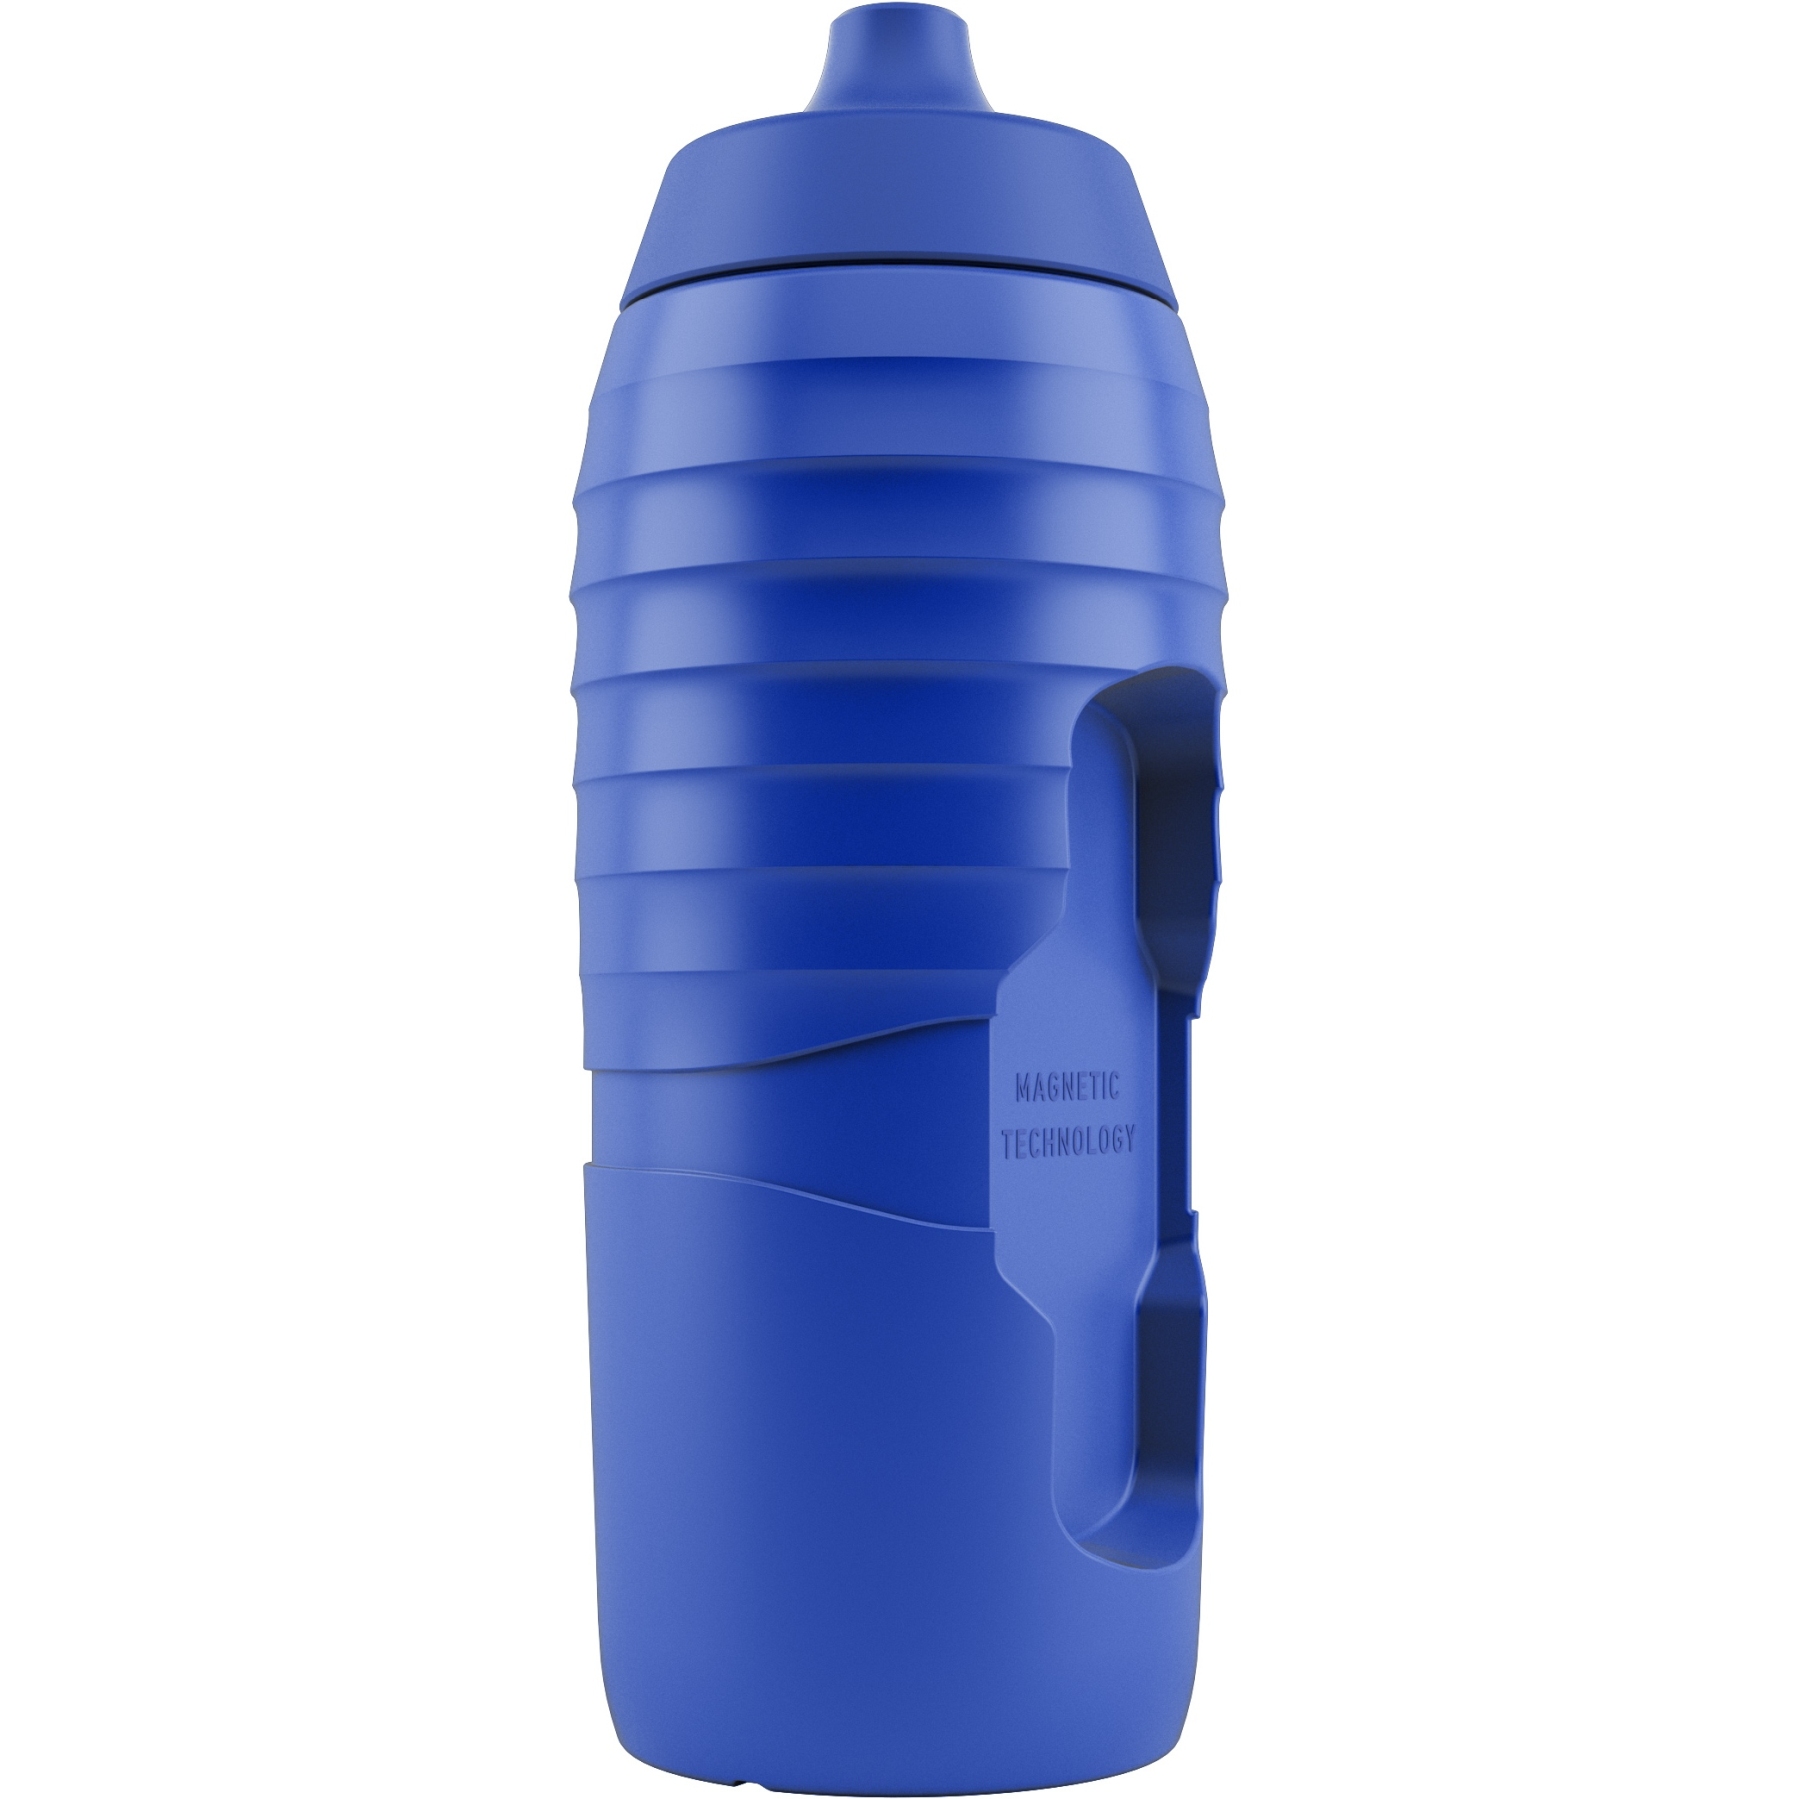 Bild von Fidlock x KEEGO Replacement Bottle Twist - Ersatz Trinkflasche 600 ml - blau